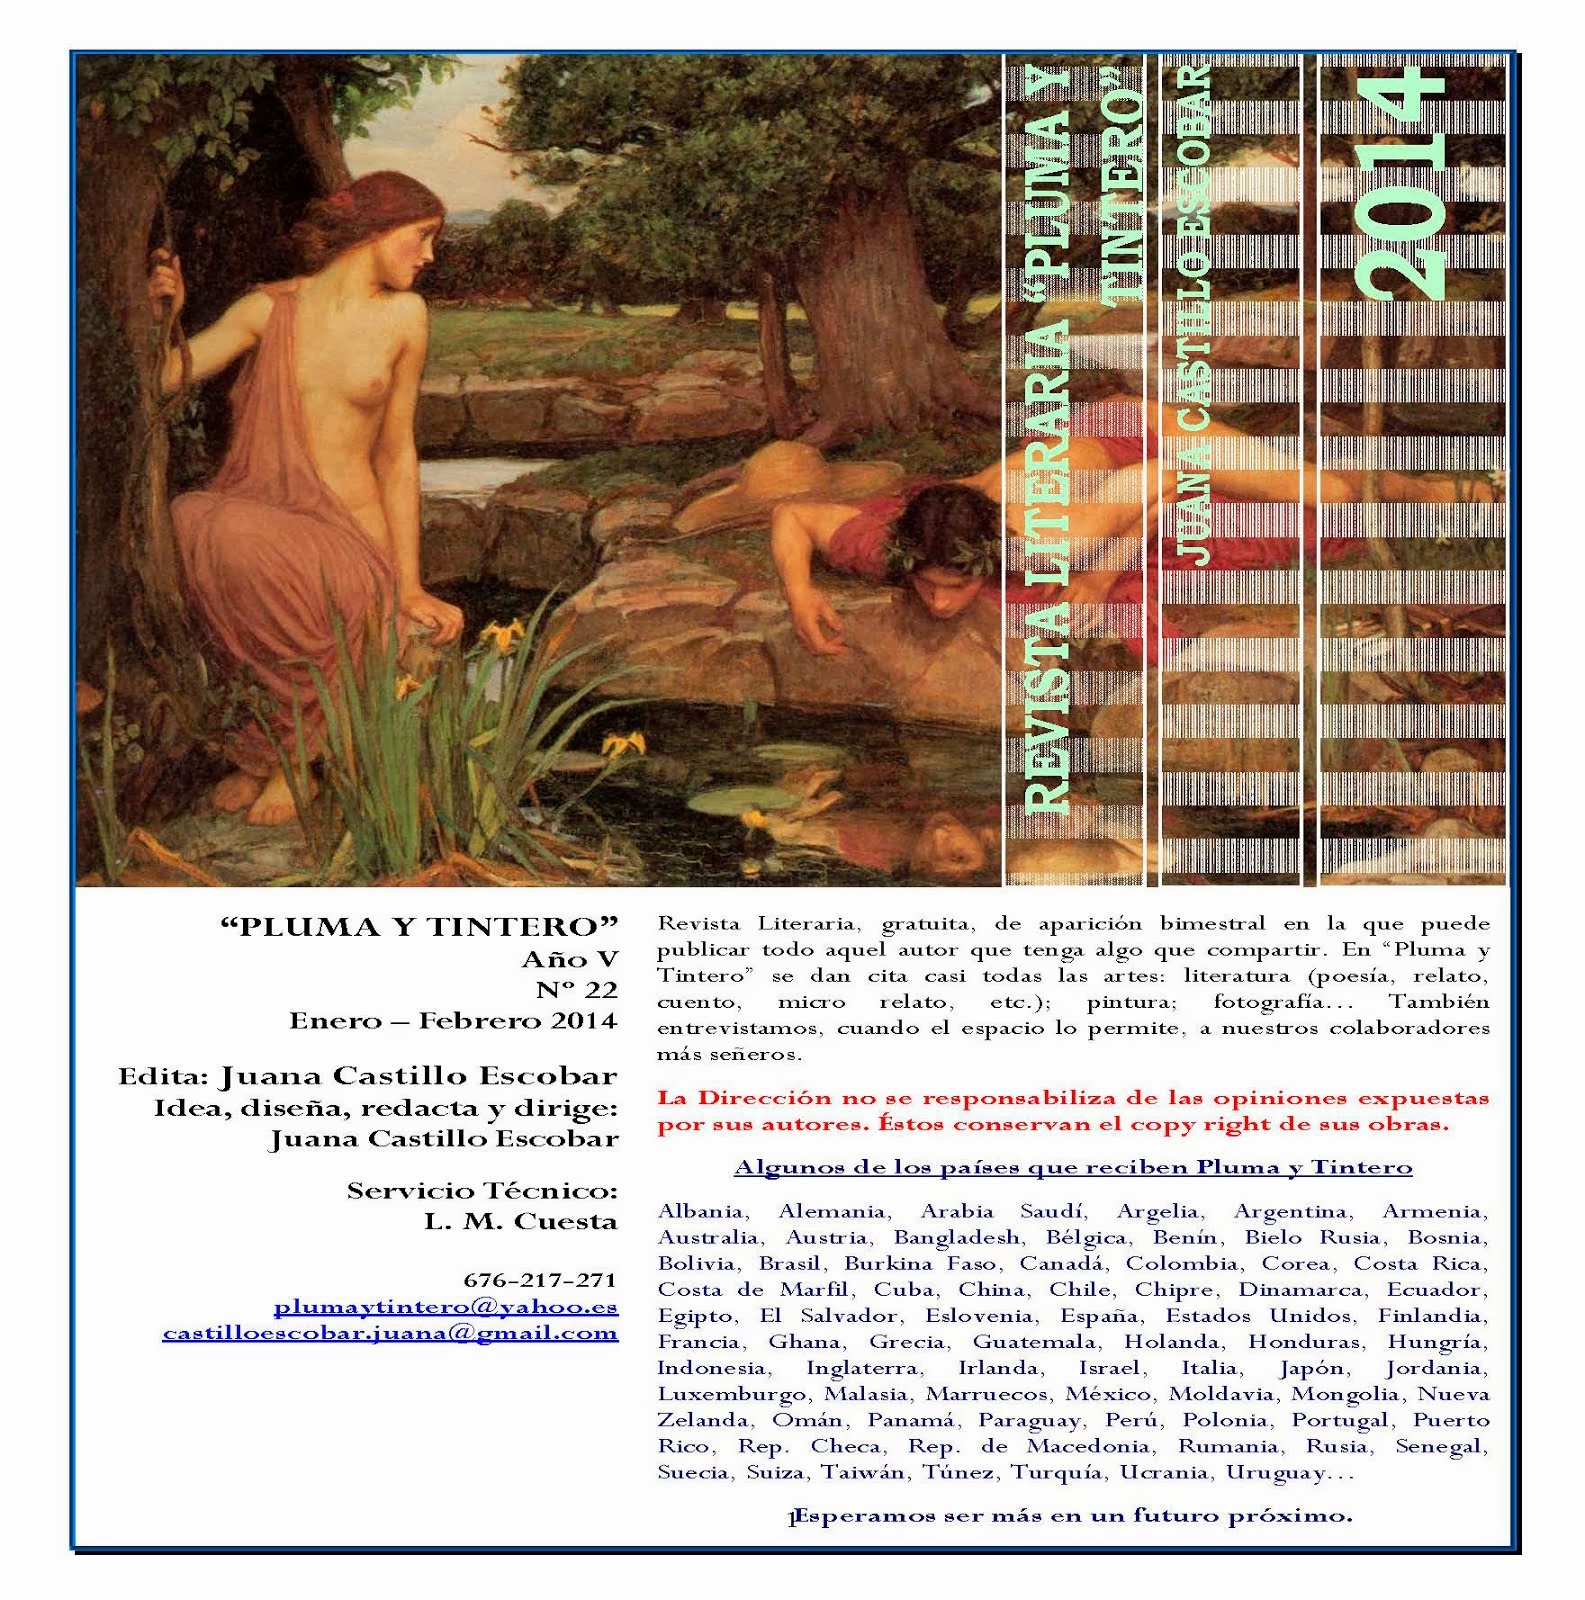 Revista Literaria "Pluma y Tintero" Año V N. 22 Enero - Febrero 2014 Clica en la imagen